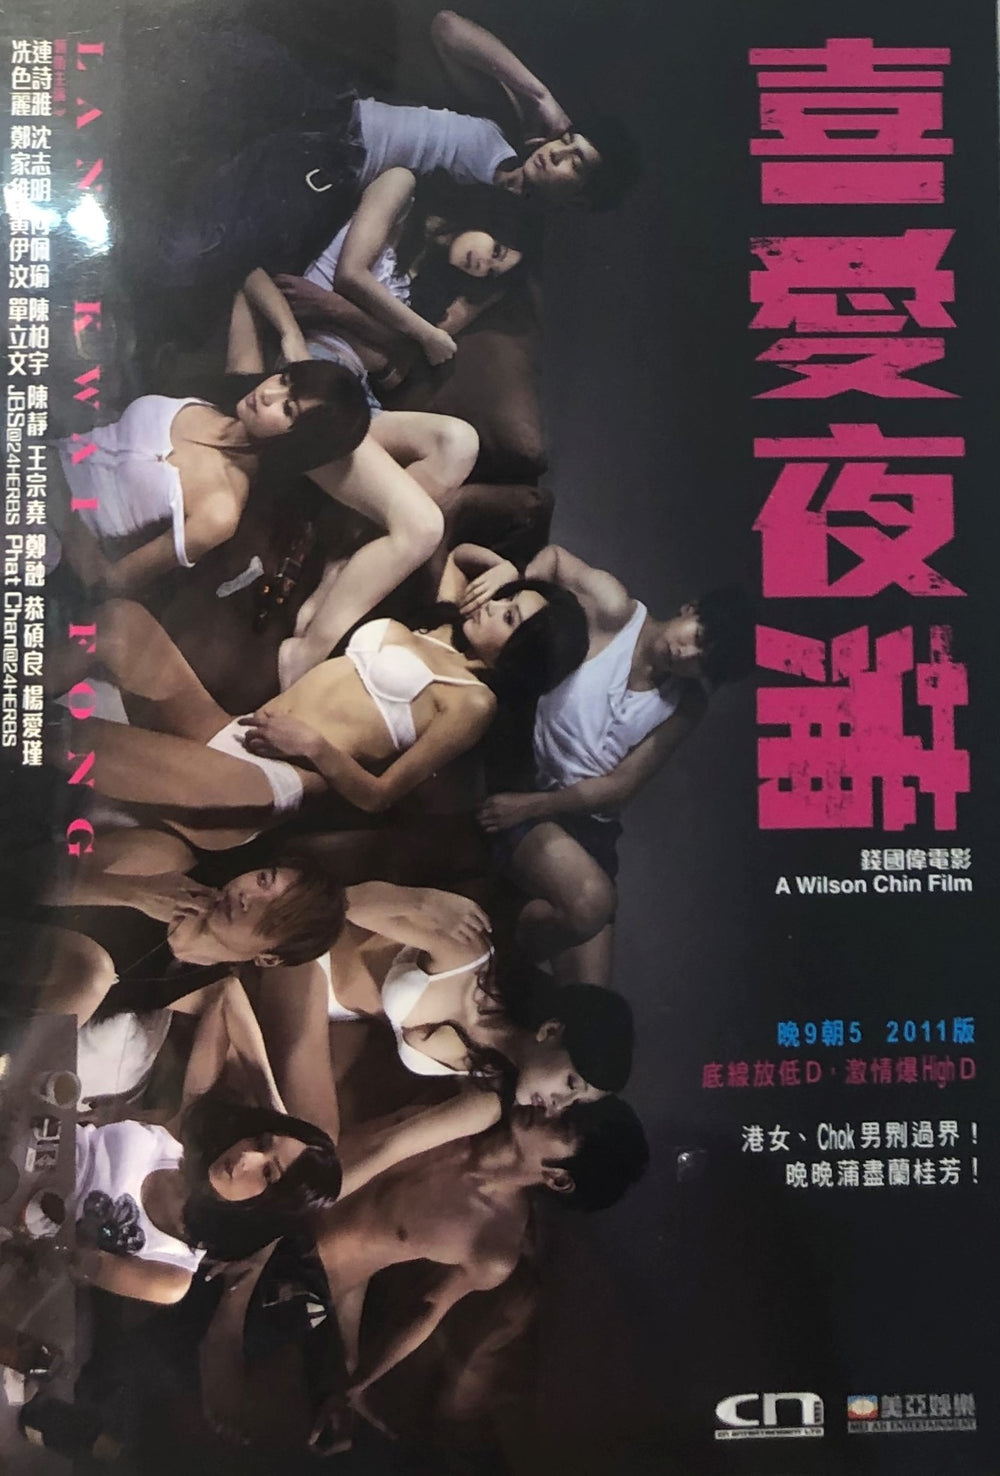 LAN KWAI FONG 喜愛夜蒲 2011 (Hong Kong Movie) DVD ENGLISH SUBTITLES (REGION FREE)